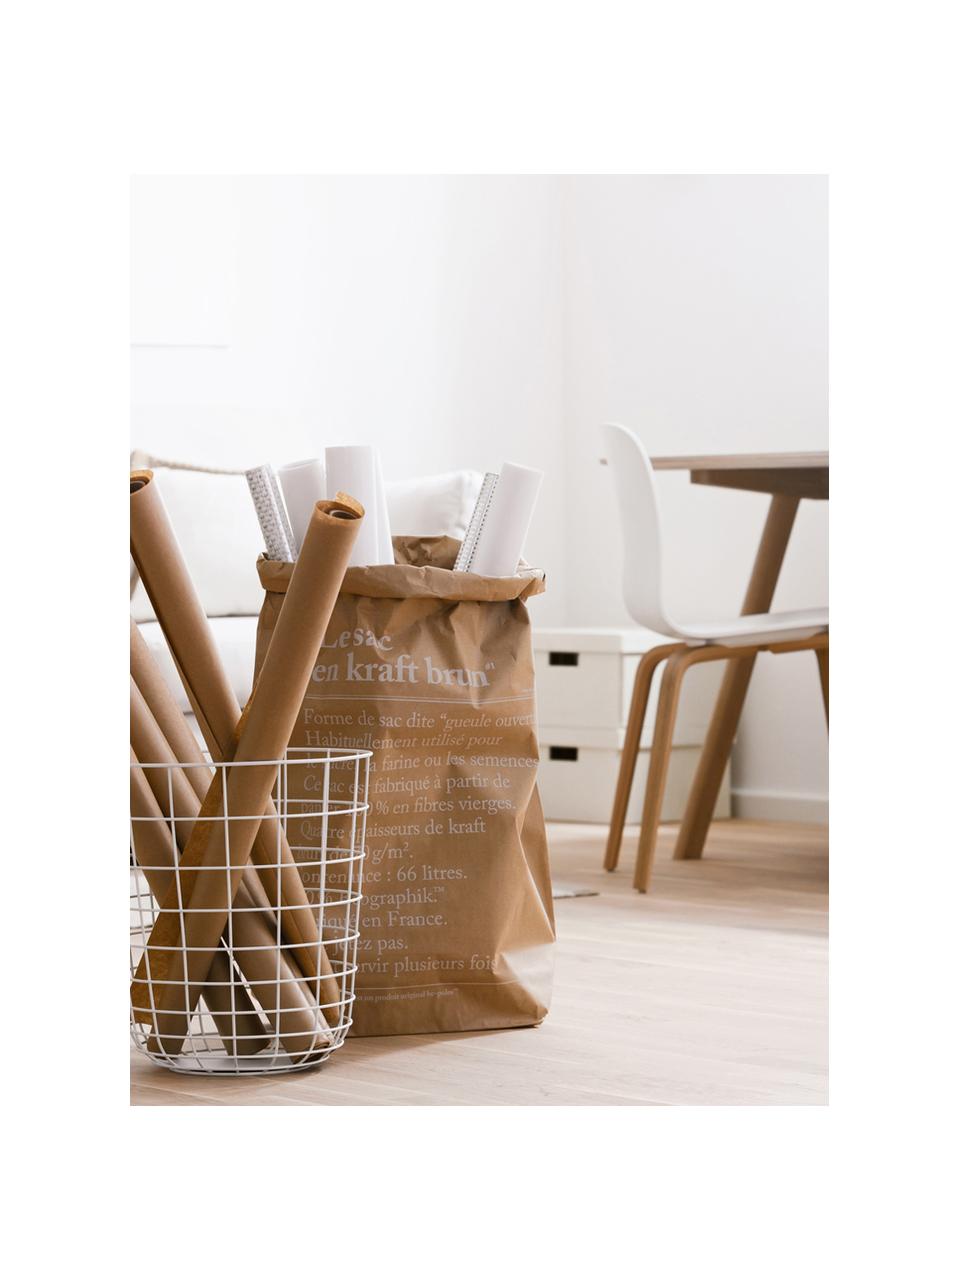 Aufbewahrungstüte Le sac en kraft brun, Frischfaserpapier, Braun, B 50 x H 69 cm